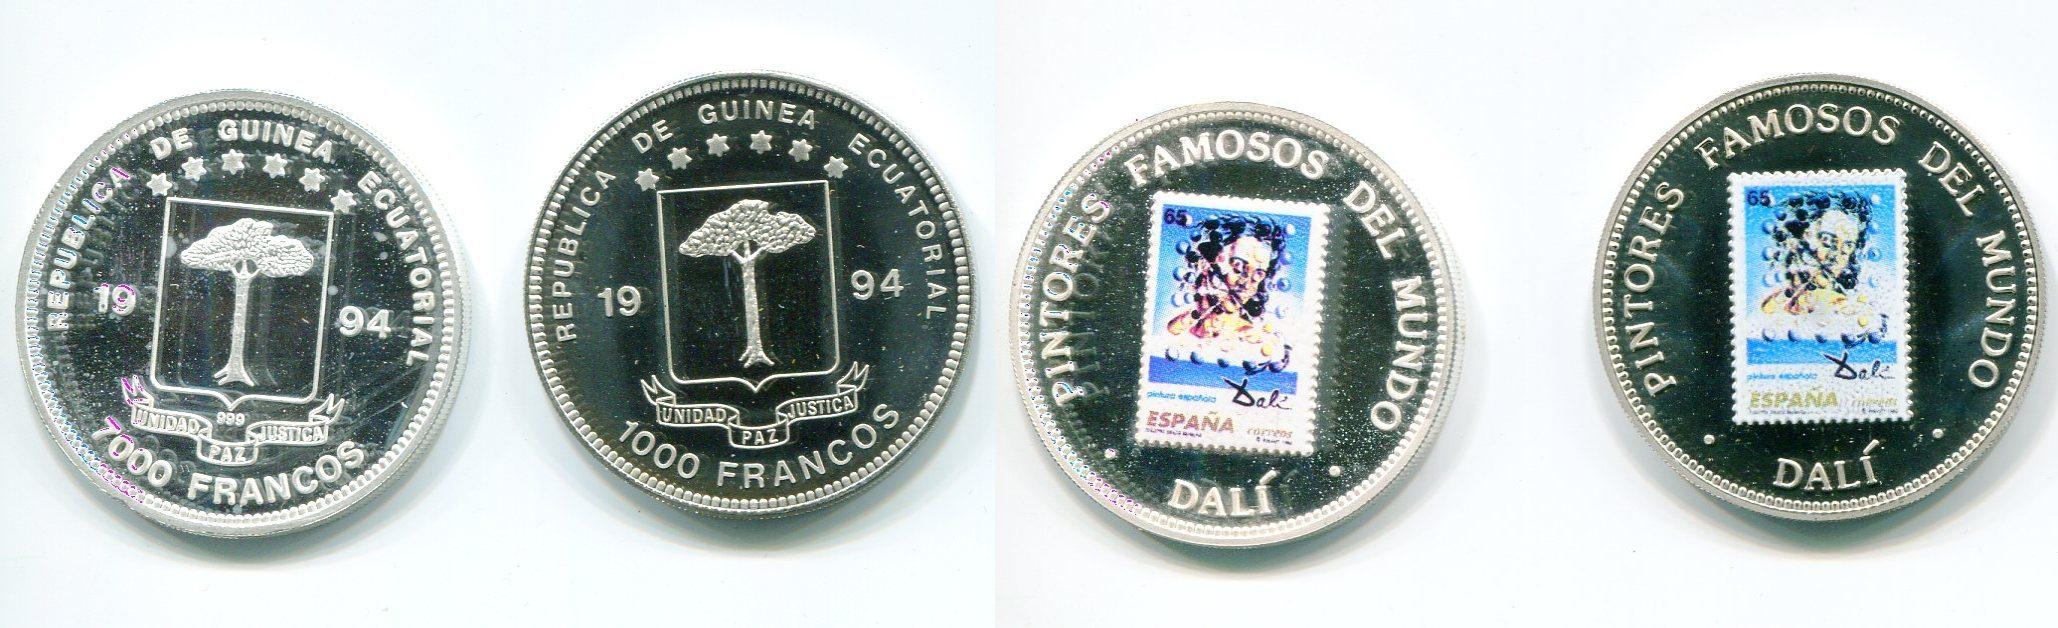 Foto Äquatorialguinea 1000 und 7000 Franc 1994